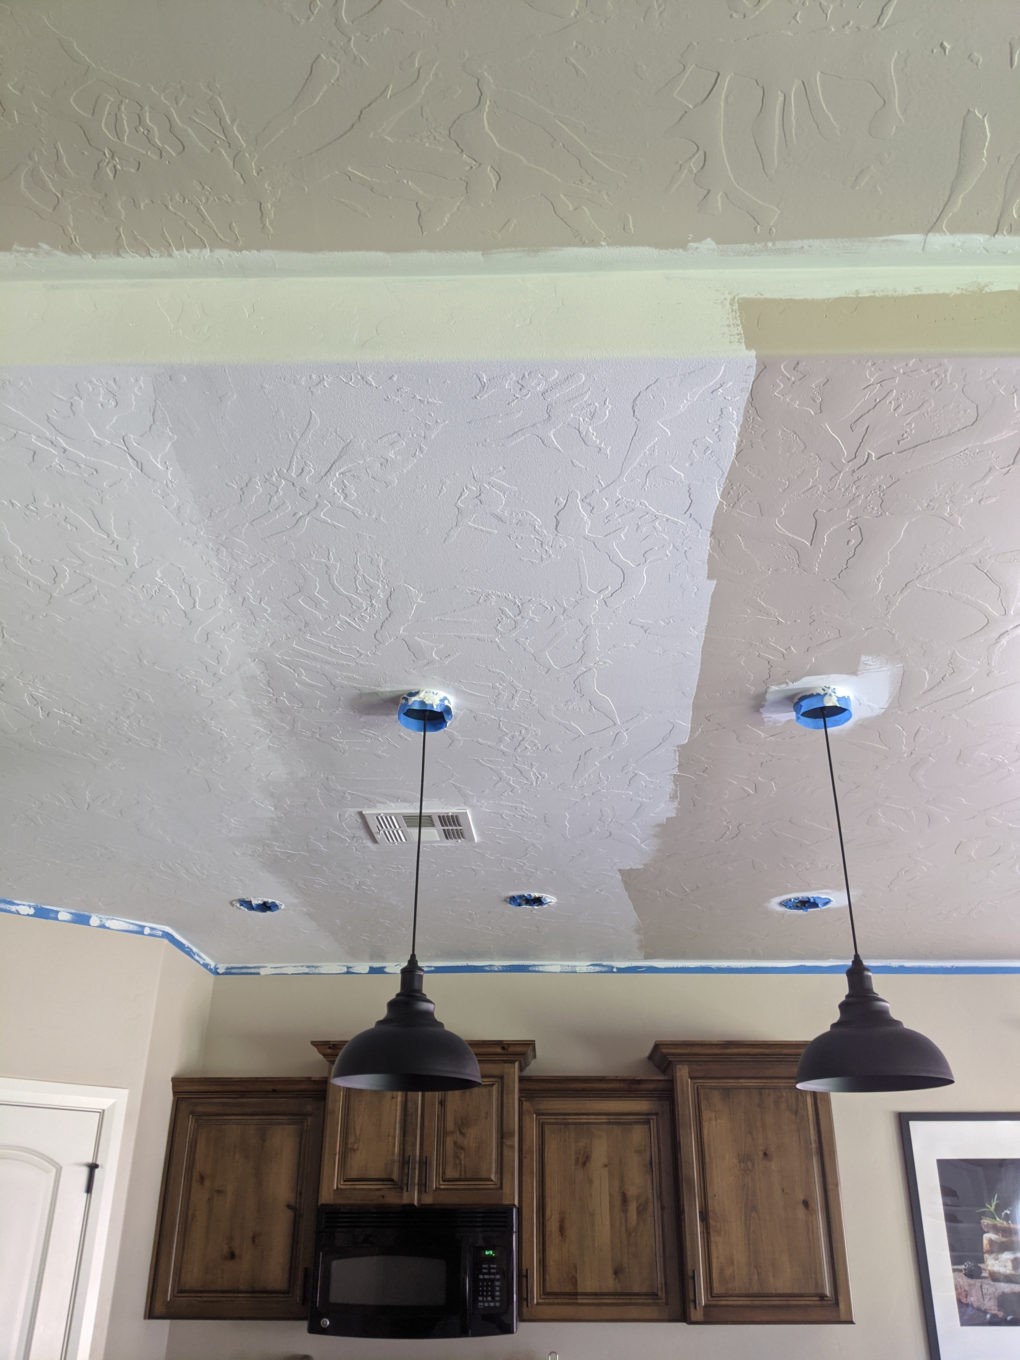 Wet vs. Dry ceiling paint